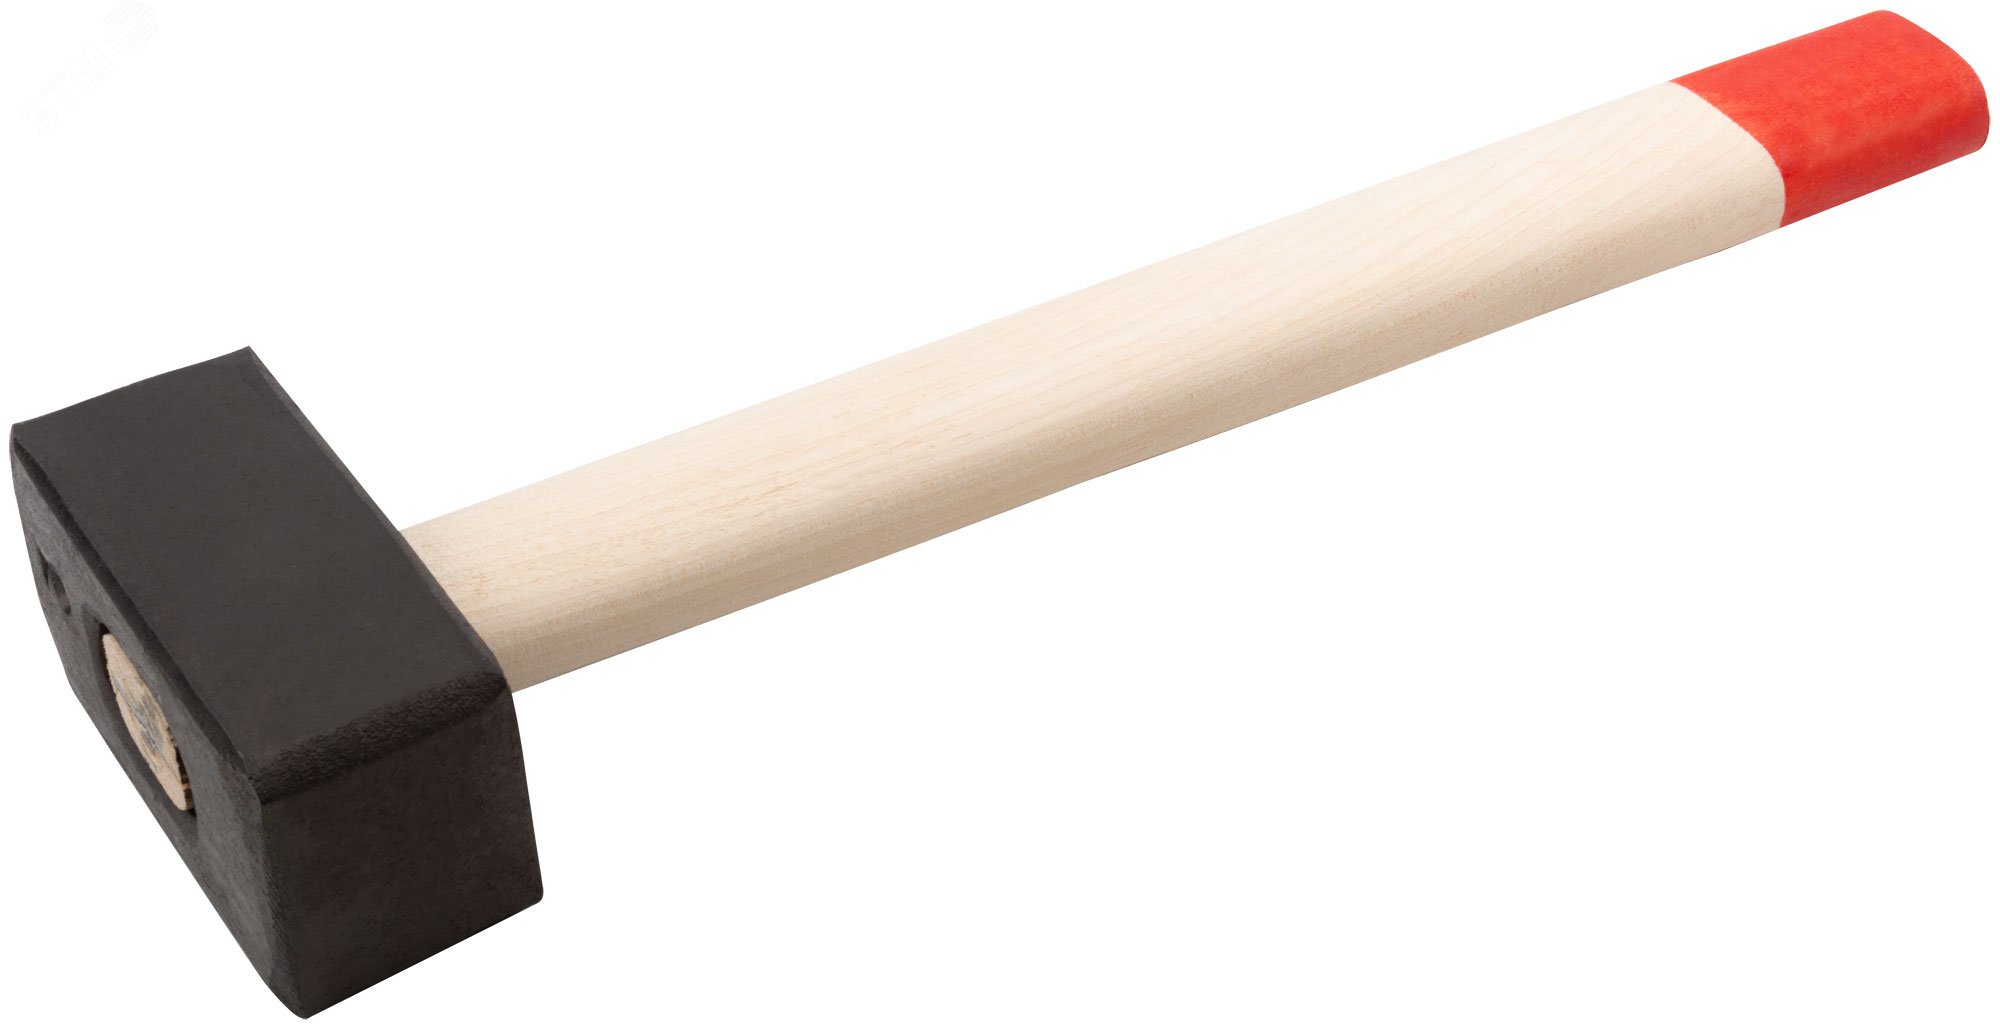 Кувалда кованая в сборе, деревянная ручка 2 кг 45022 КУРС РОС - превью 2